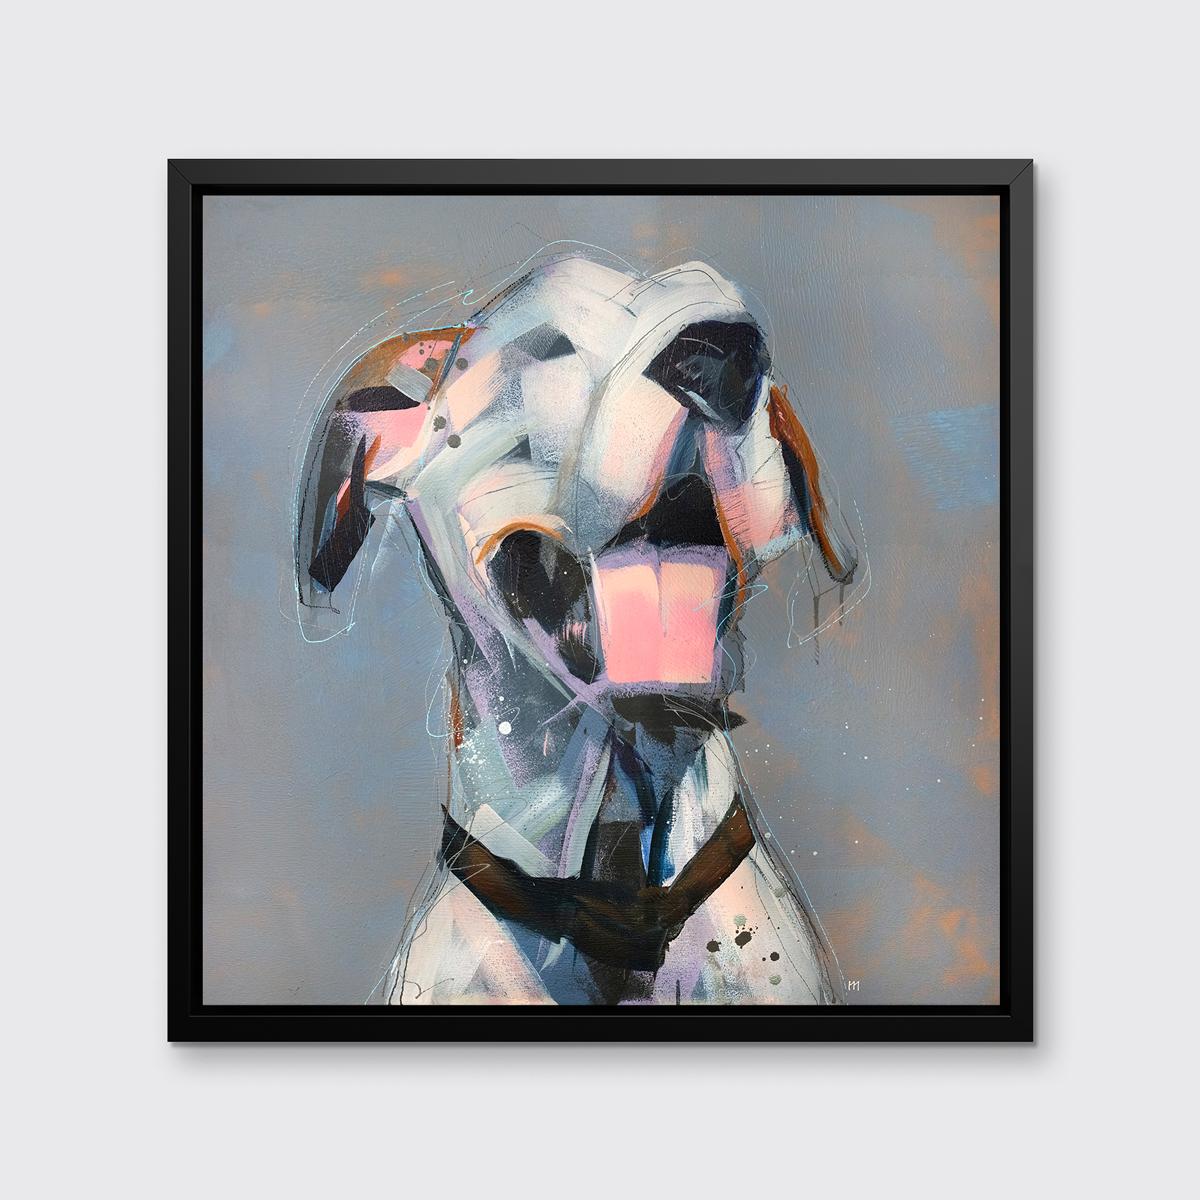 Cette impression abstraite d'un chien par l'artiste Russell Miyaki présente une palette neutre et légère avec des éléments expressifs et ludiques pour créer une composition énergique d'un dalmatien avec la bouche ouverte et la langue rose étendue